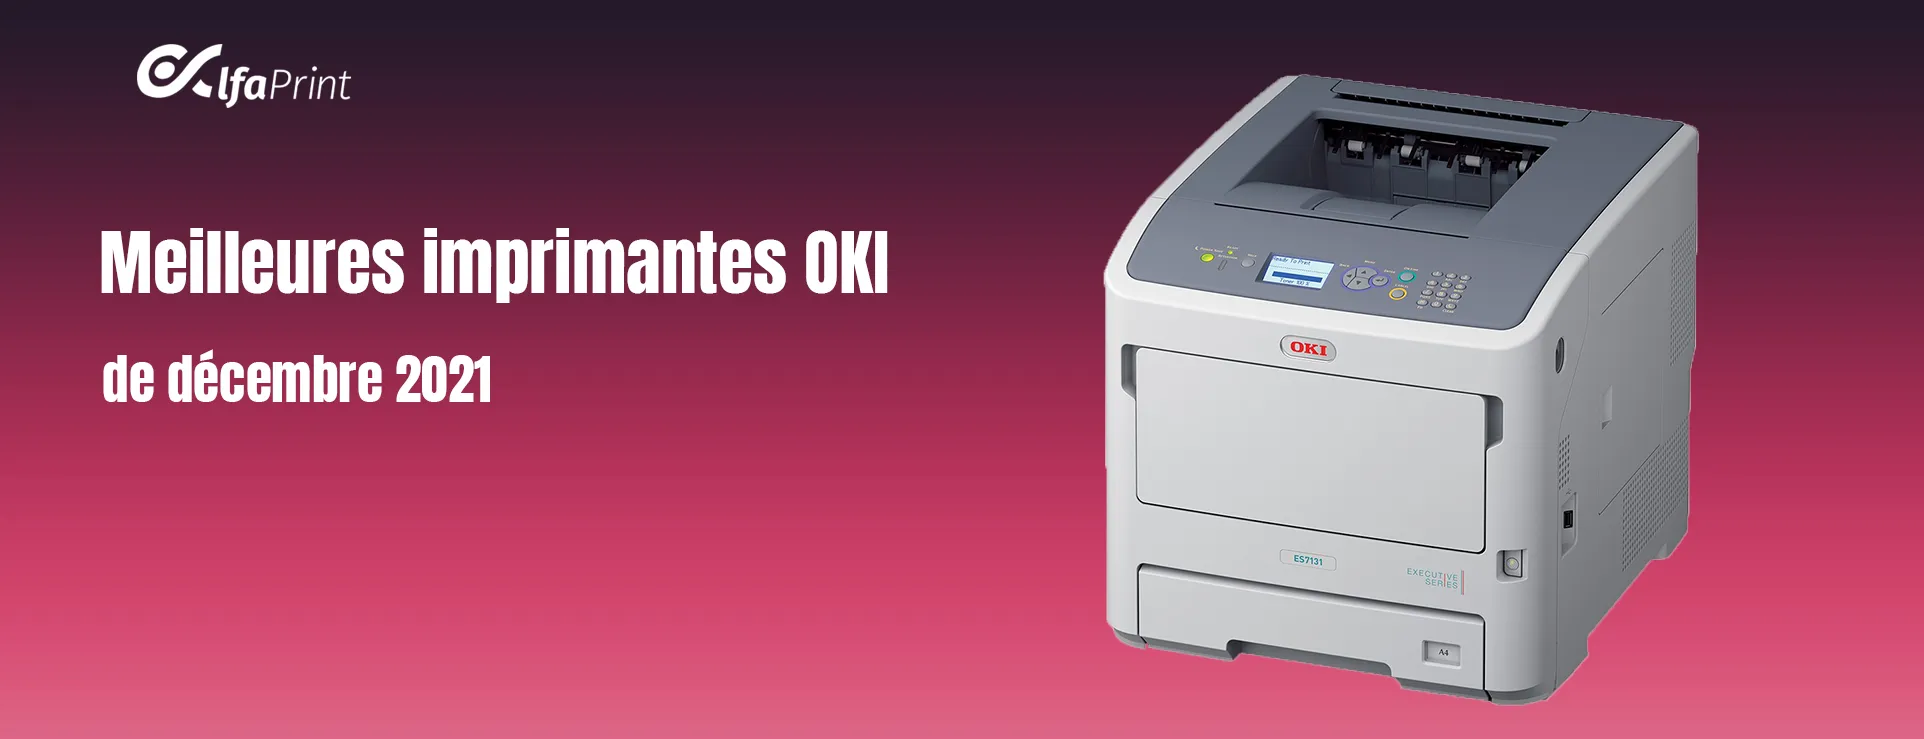 OKI MC883dn - imprimante multifonctions - couleur